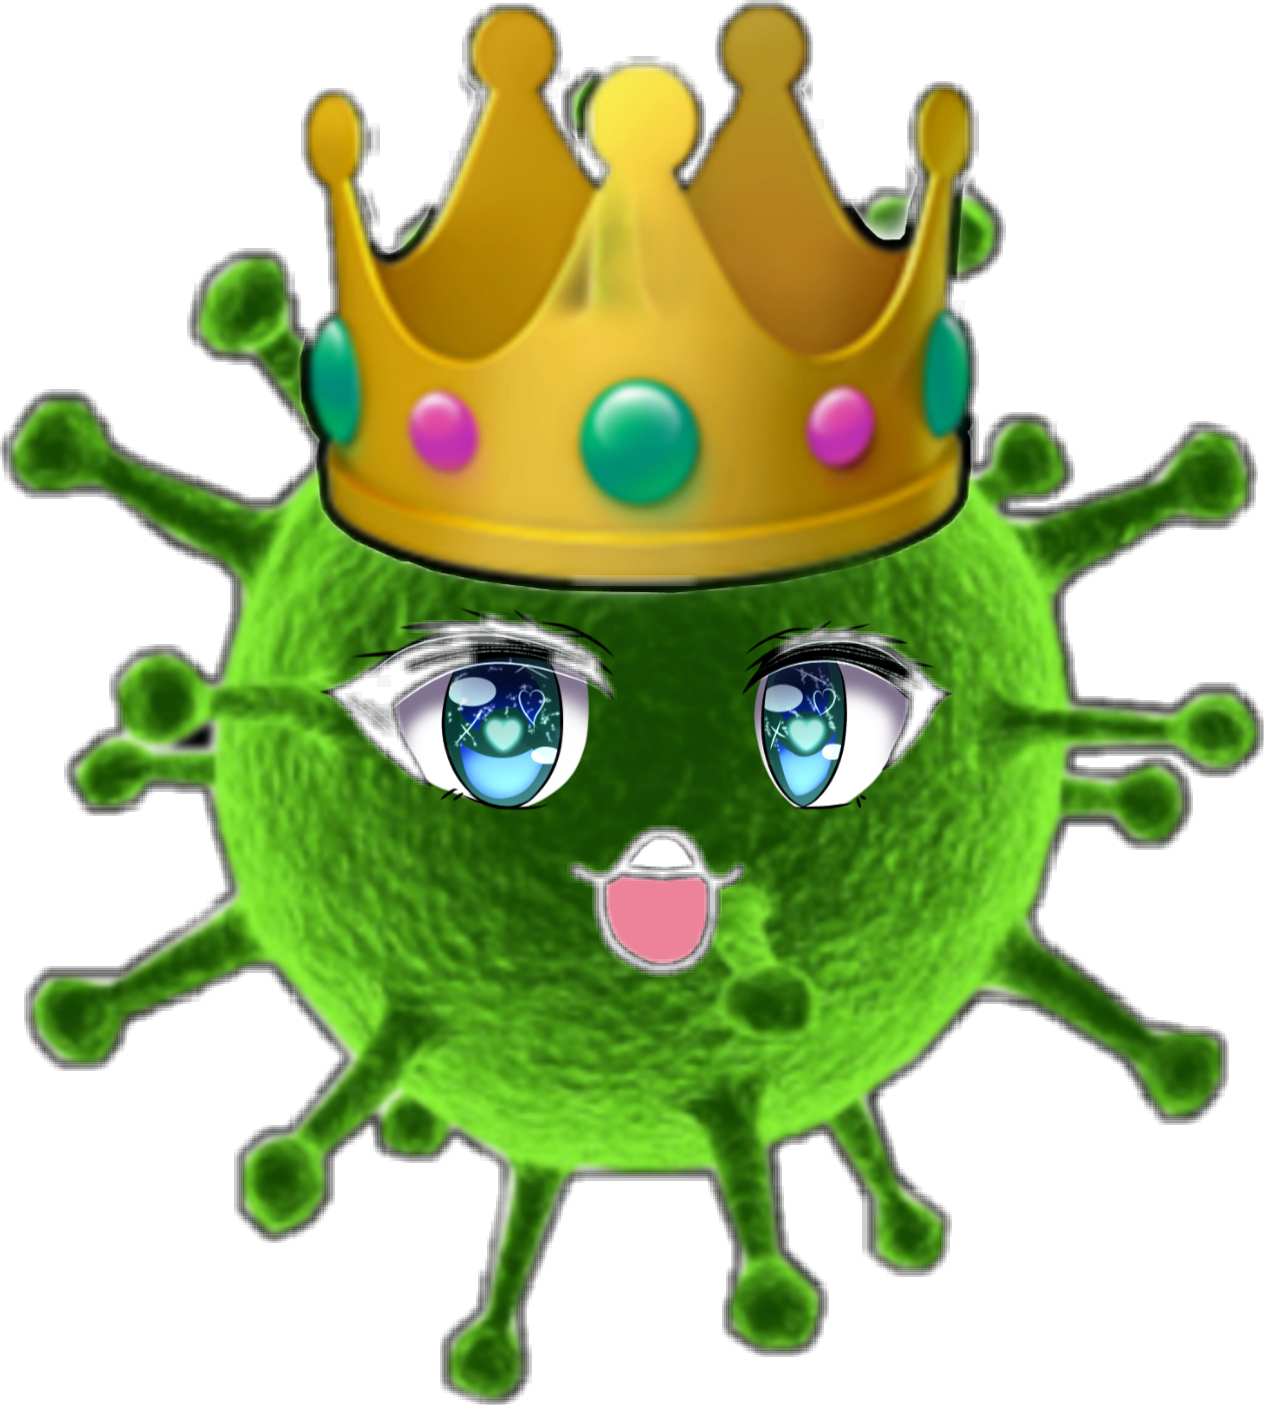 Вирус микробы коронавирус. Коронавирус коронавирус корона. Коронавирус с короной. Микробы ковид 19. Картинка вируса для детей